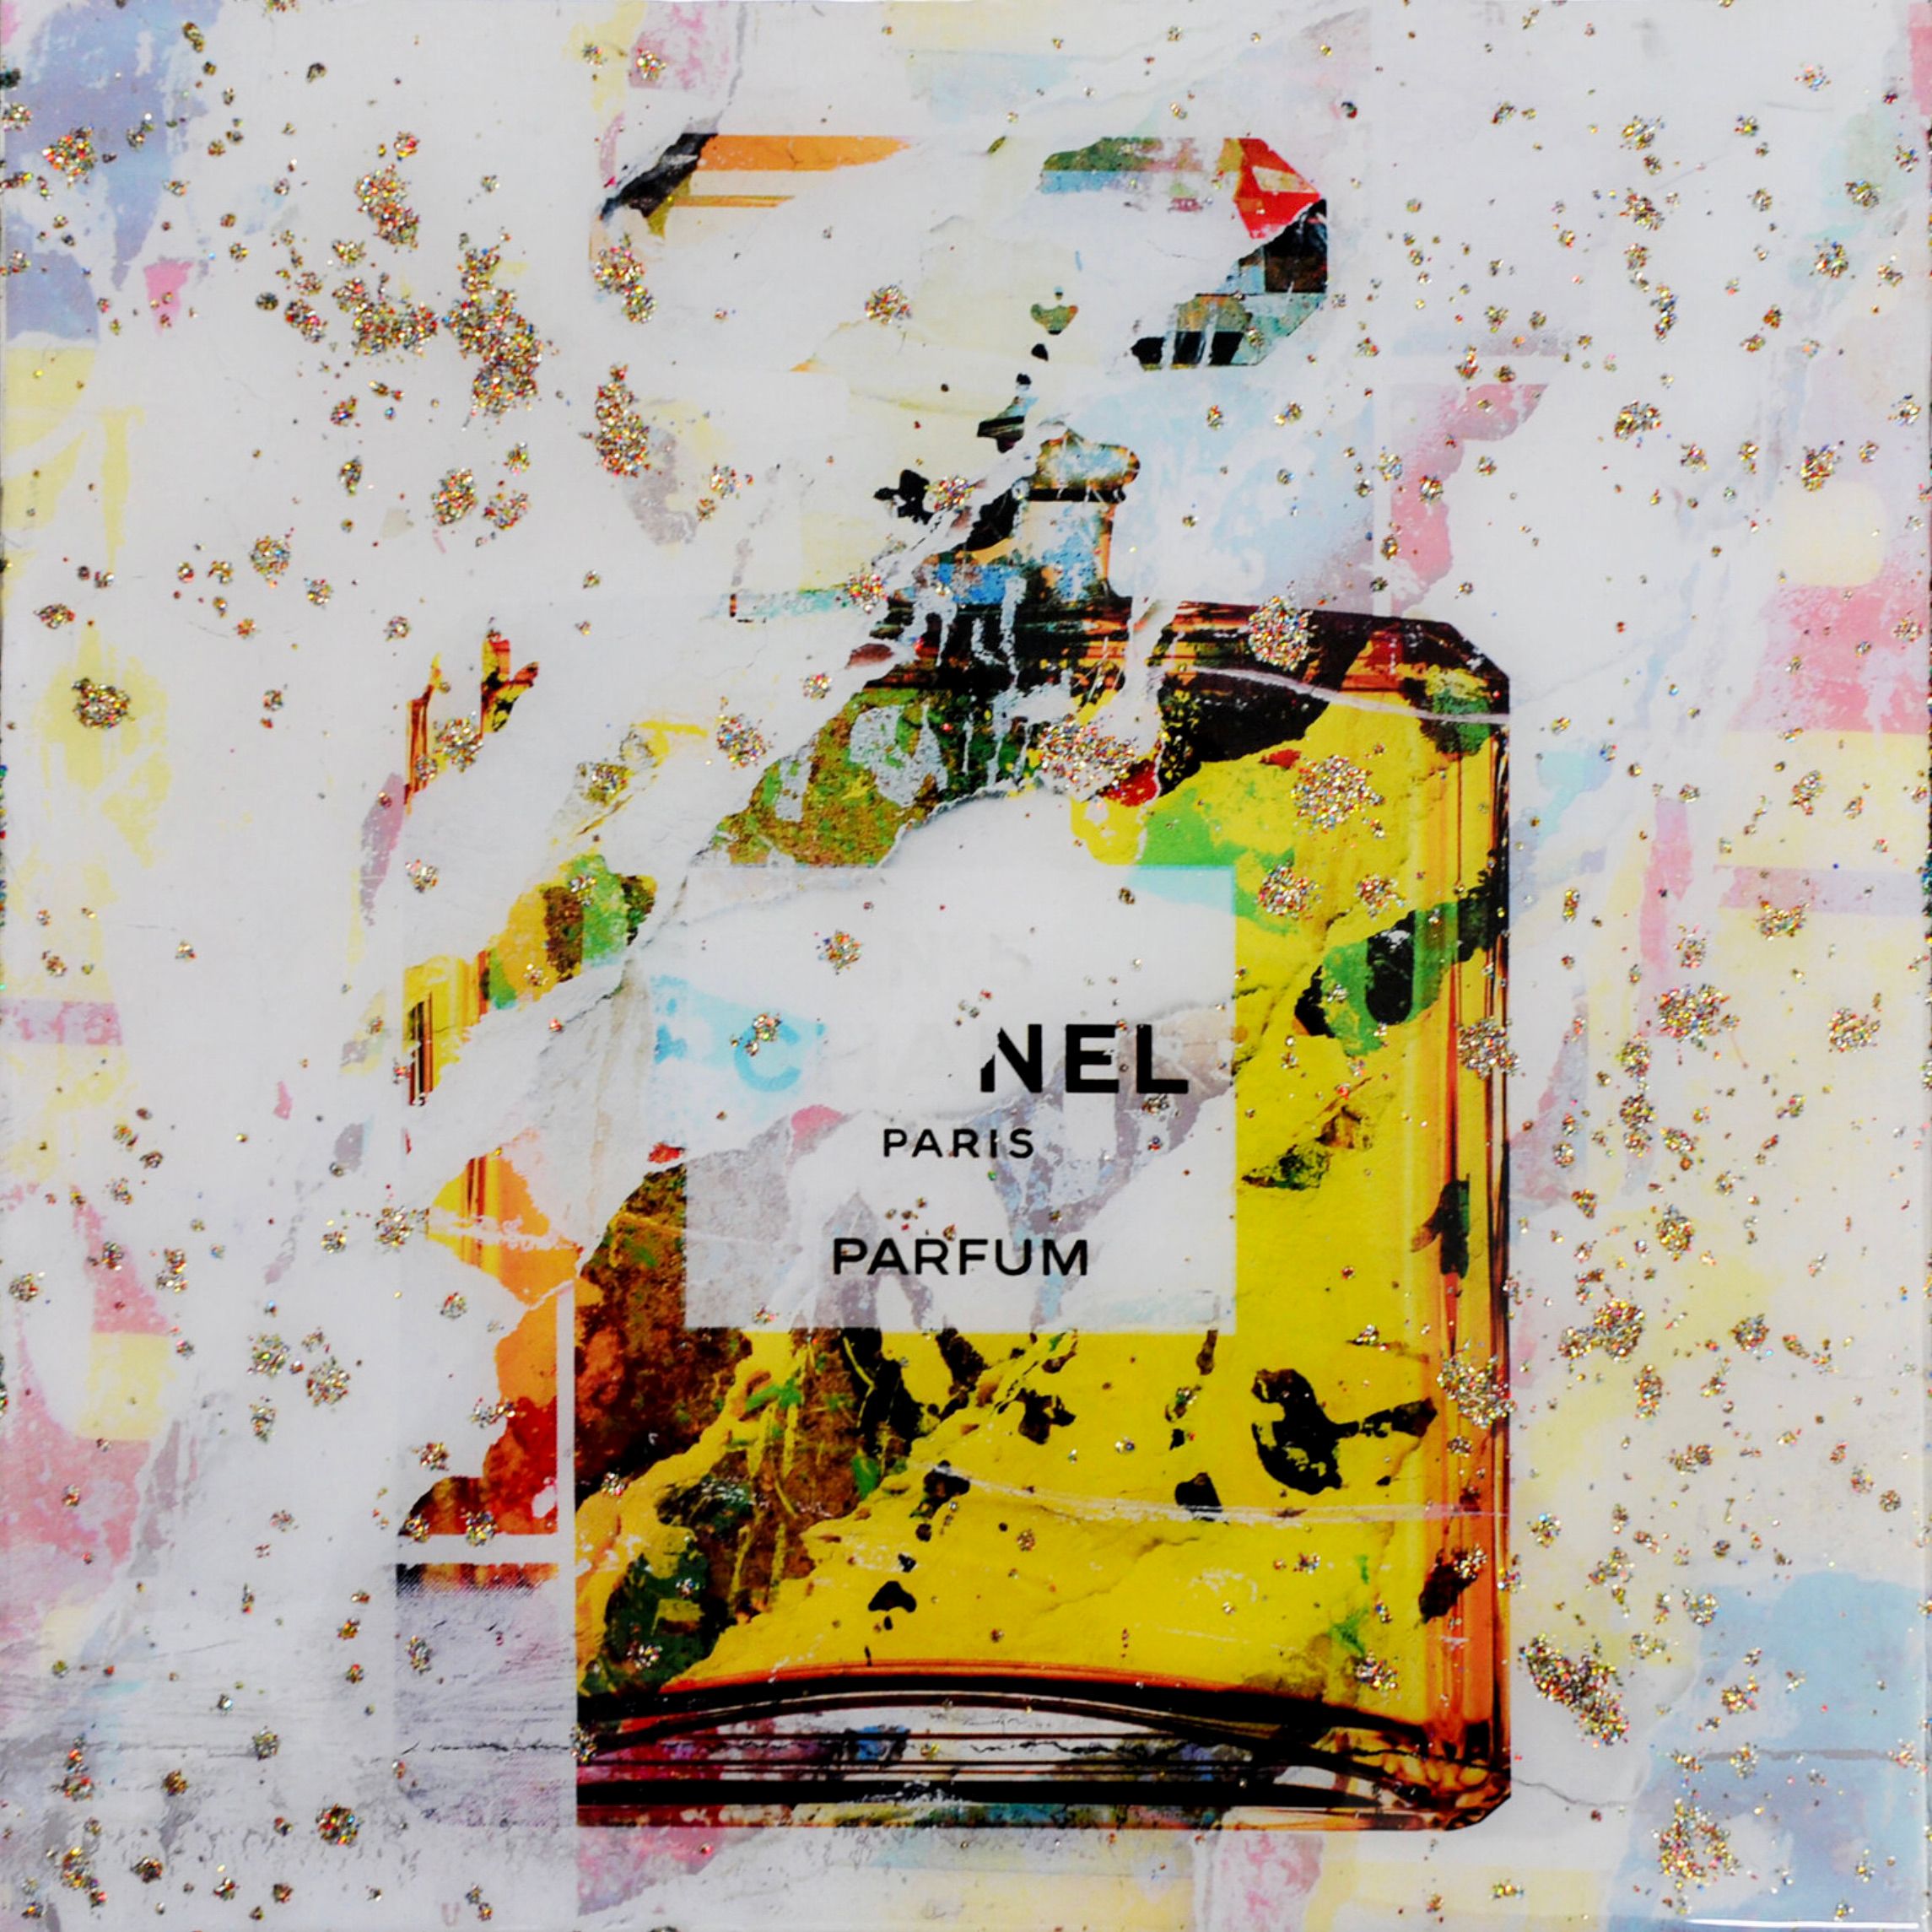 Karin Vermeer's "Chanel No.5 small resin edition" ist eine digitale Kombination und Bearbeitung von Fotografien, Gemälden und Collage zu neuen, Popart Kunstwerke in Farbe.